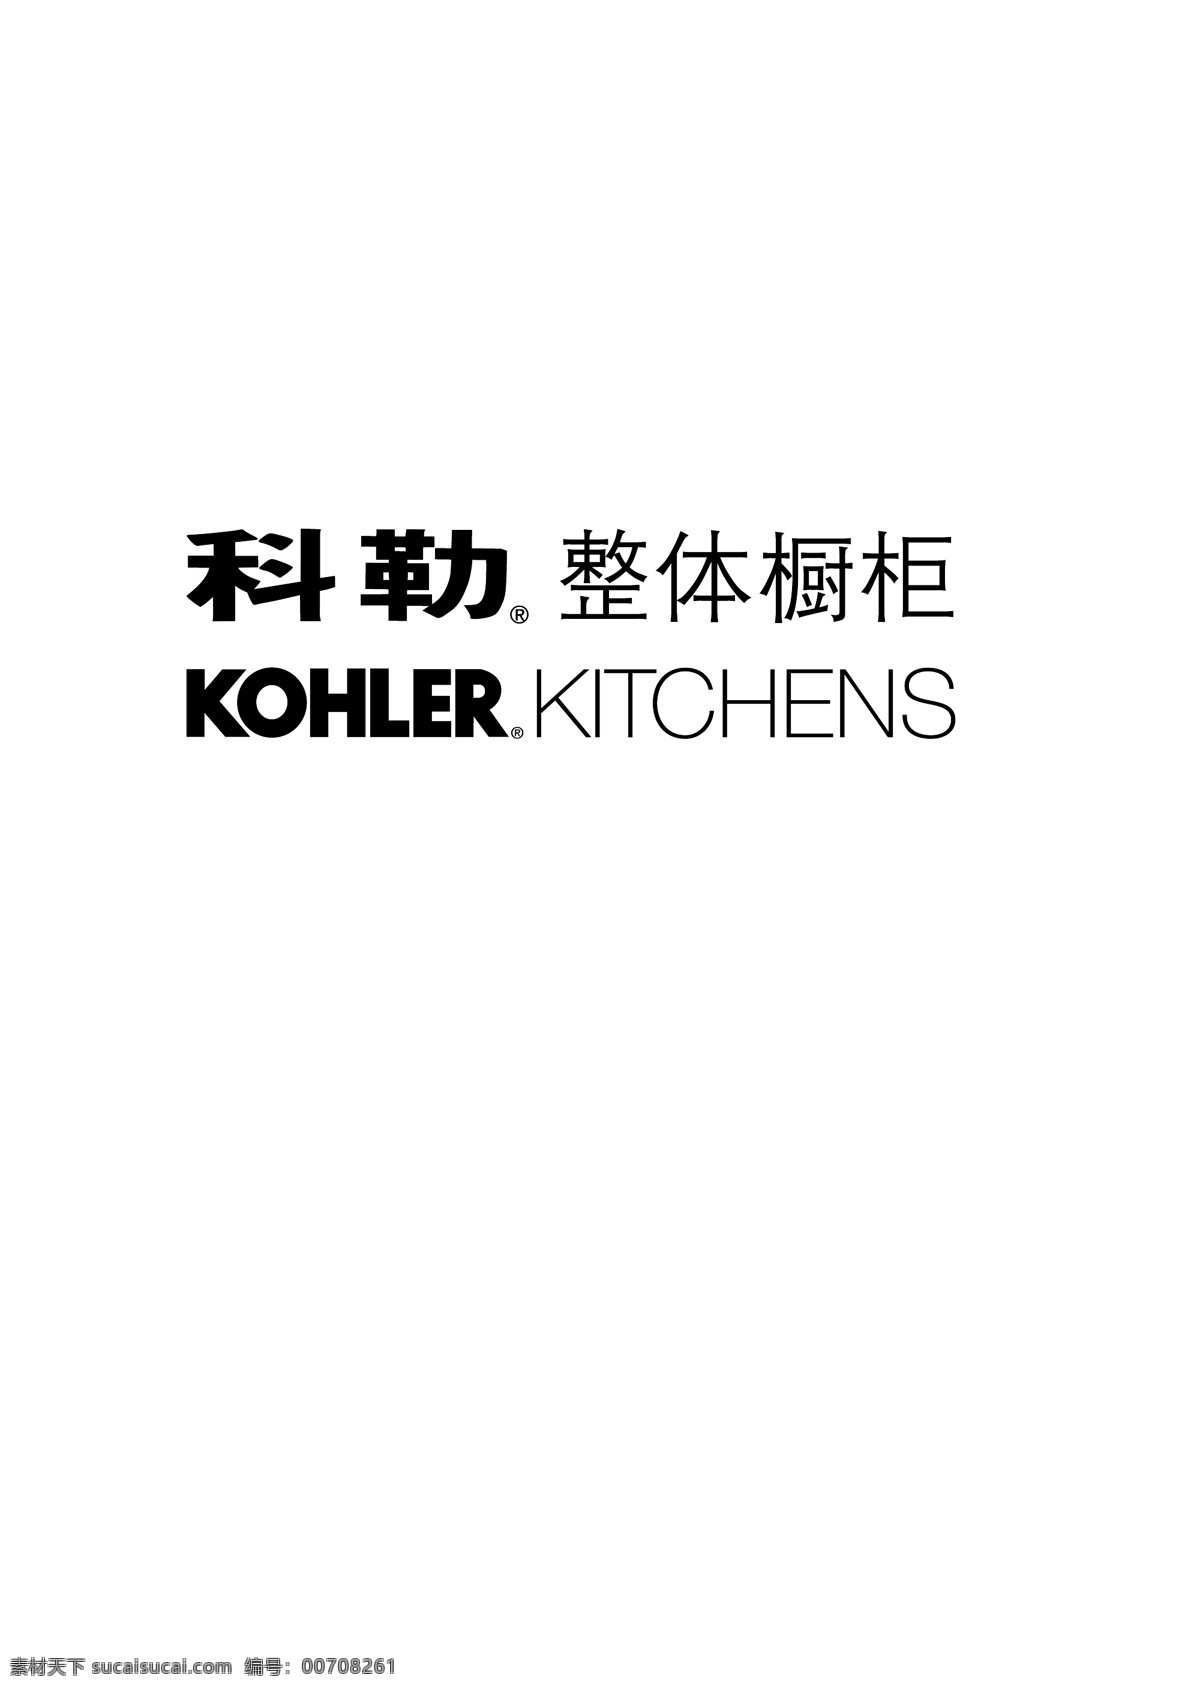 科勒厨房 标志 整体衣柜 kohler litchens 黑白 矢量